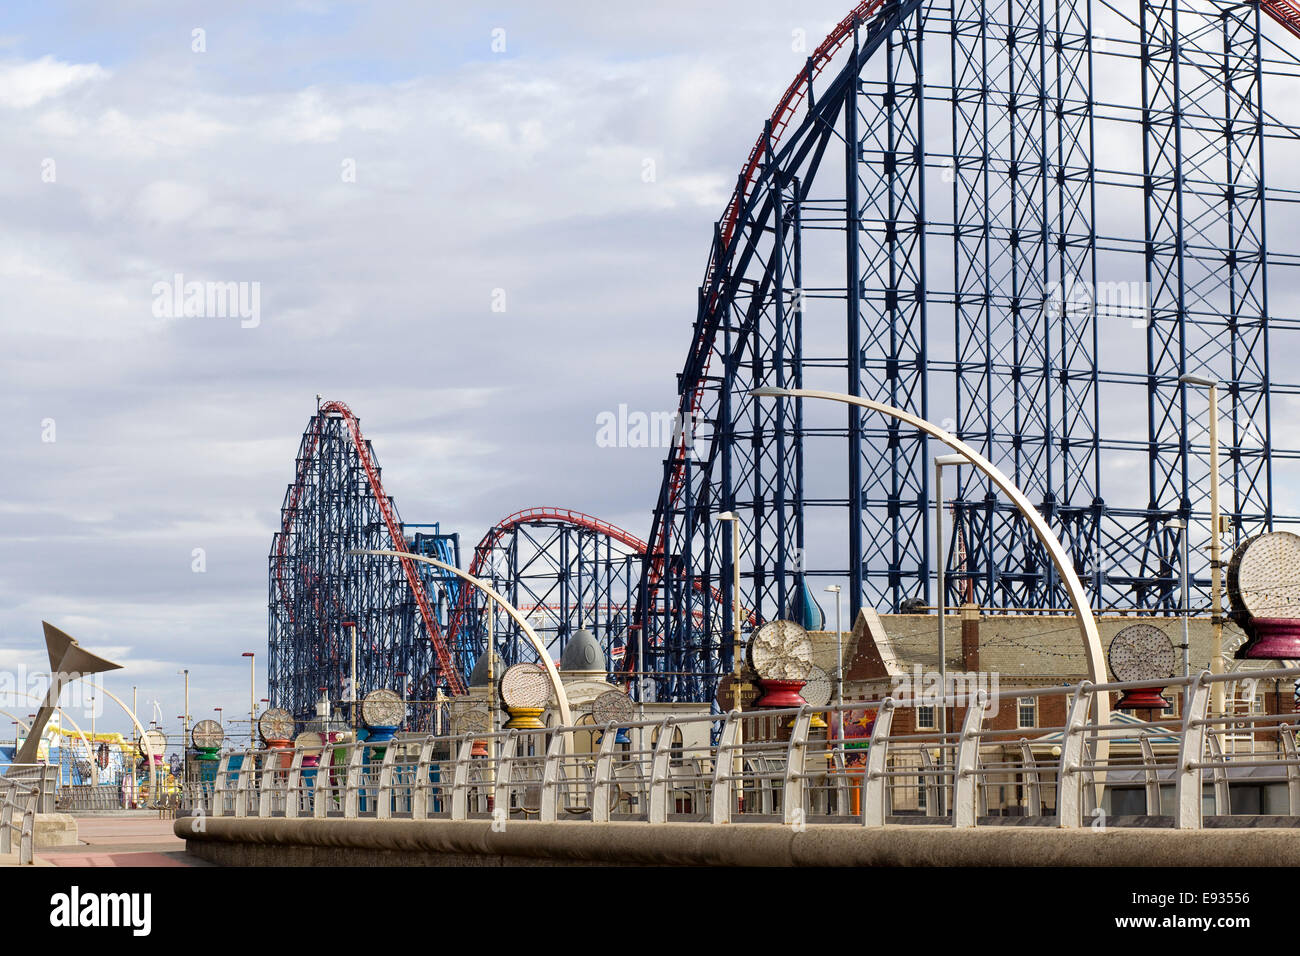 La spiaggia e il lungomare, il Golden Mile, Blackpool, Lancashire, Regno Unito Foto Stock